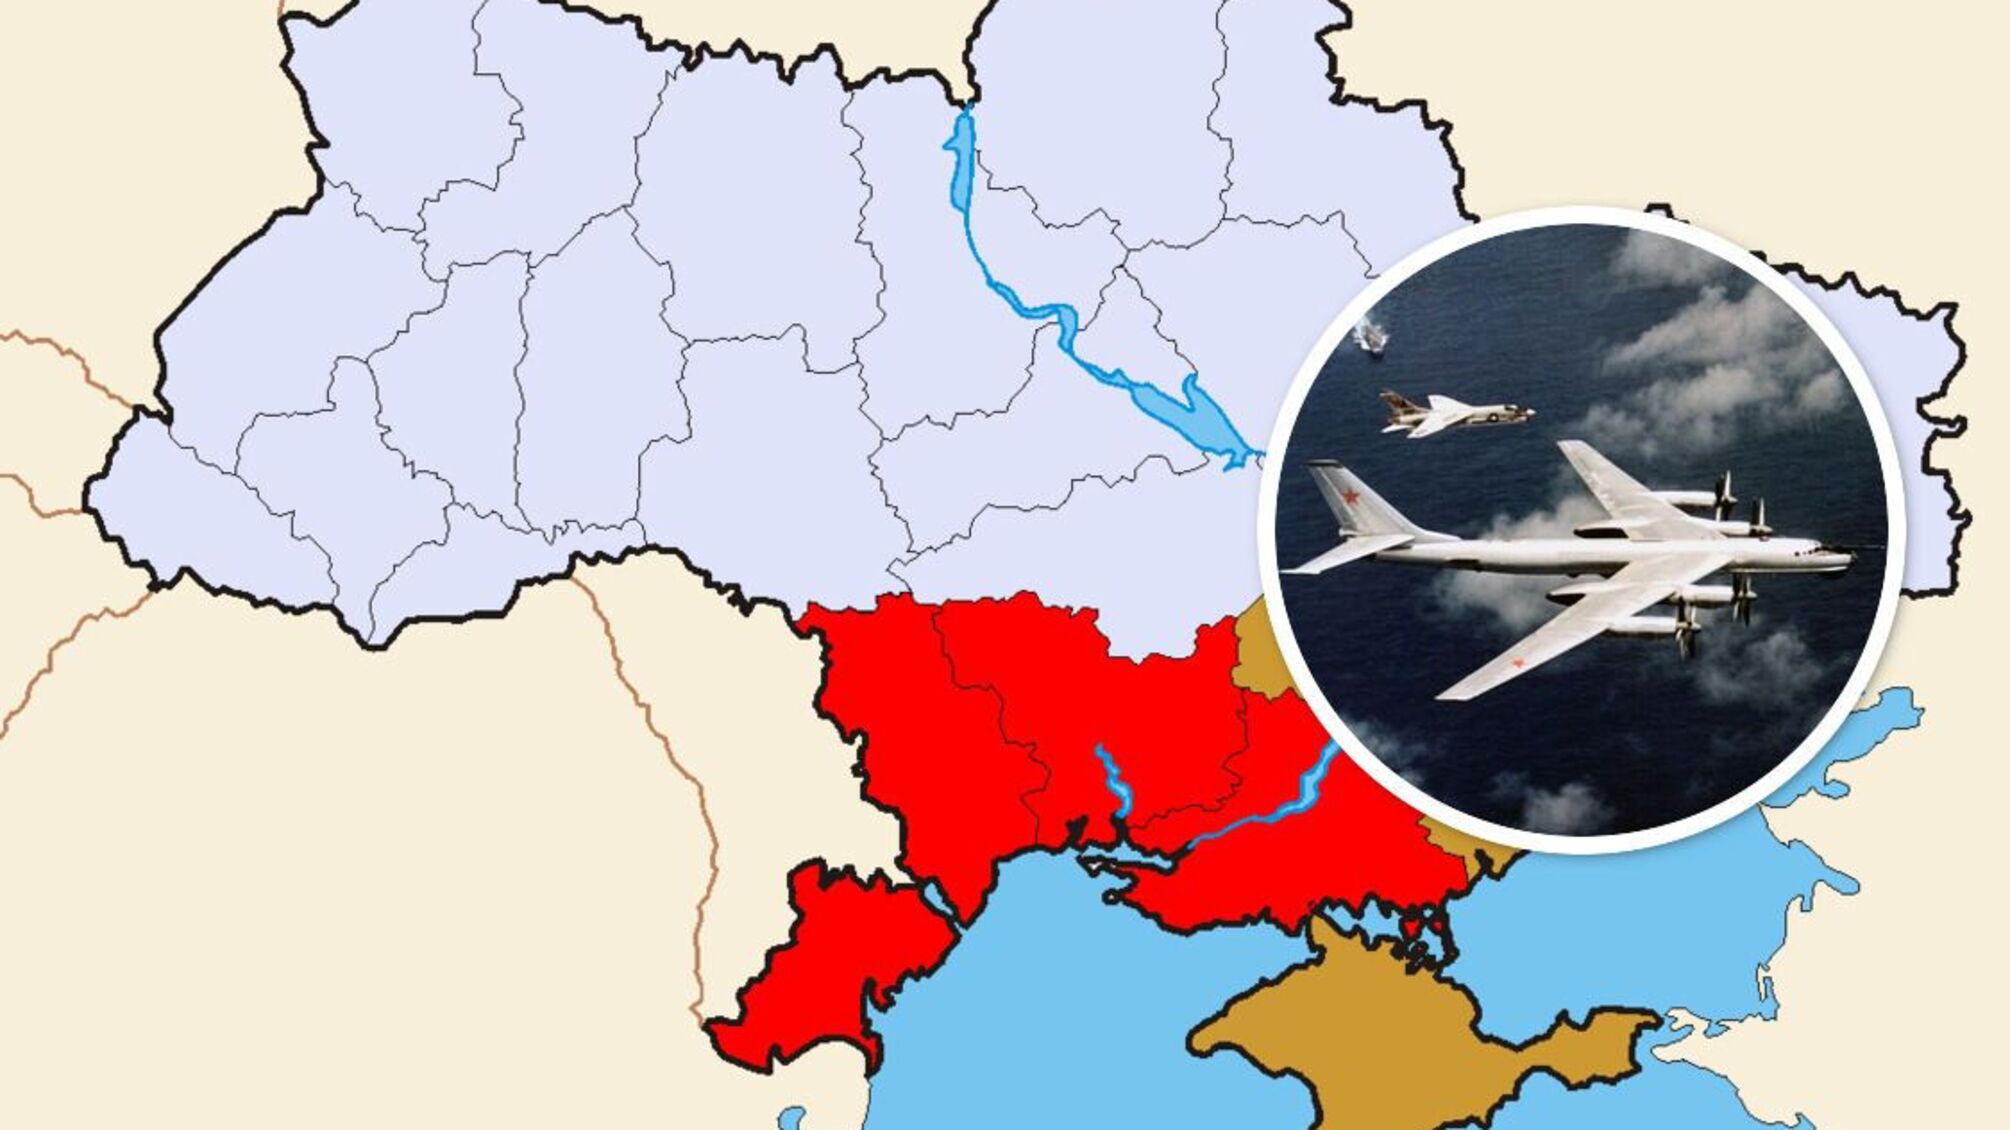 На юге масштабная ракетная угроза: в небо взлетели 9 вражеских Ту-95, есть запуски (обновлено)